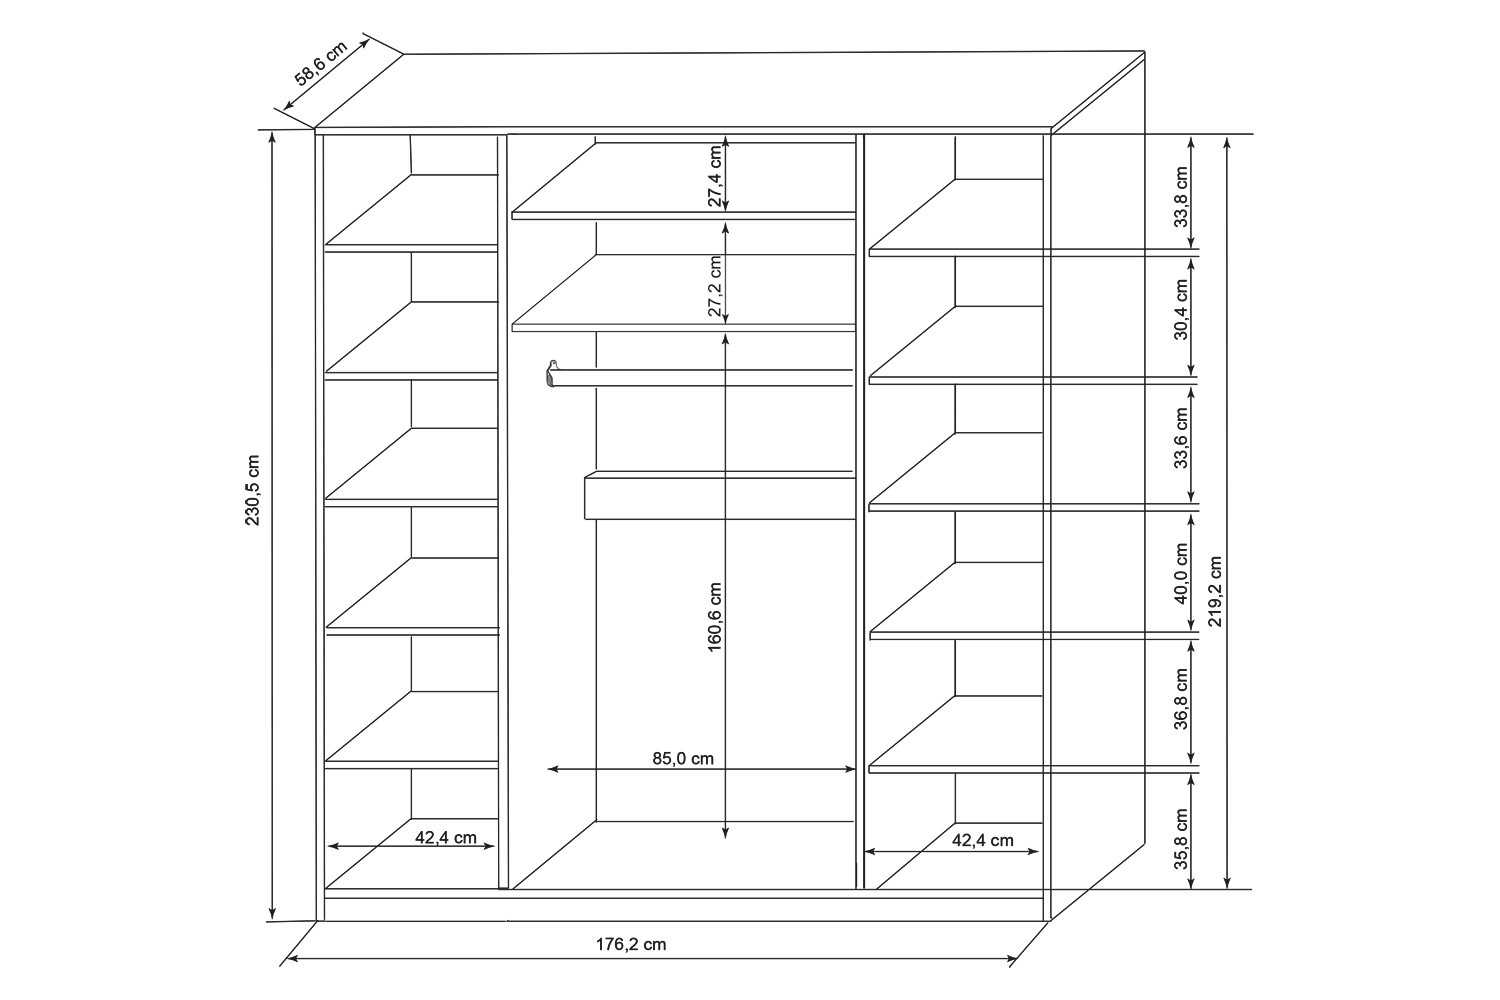 чертежи встроенных шкафов купе с размерами на 3 м шириной